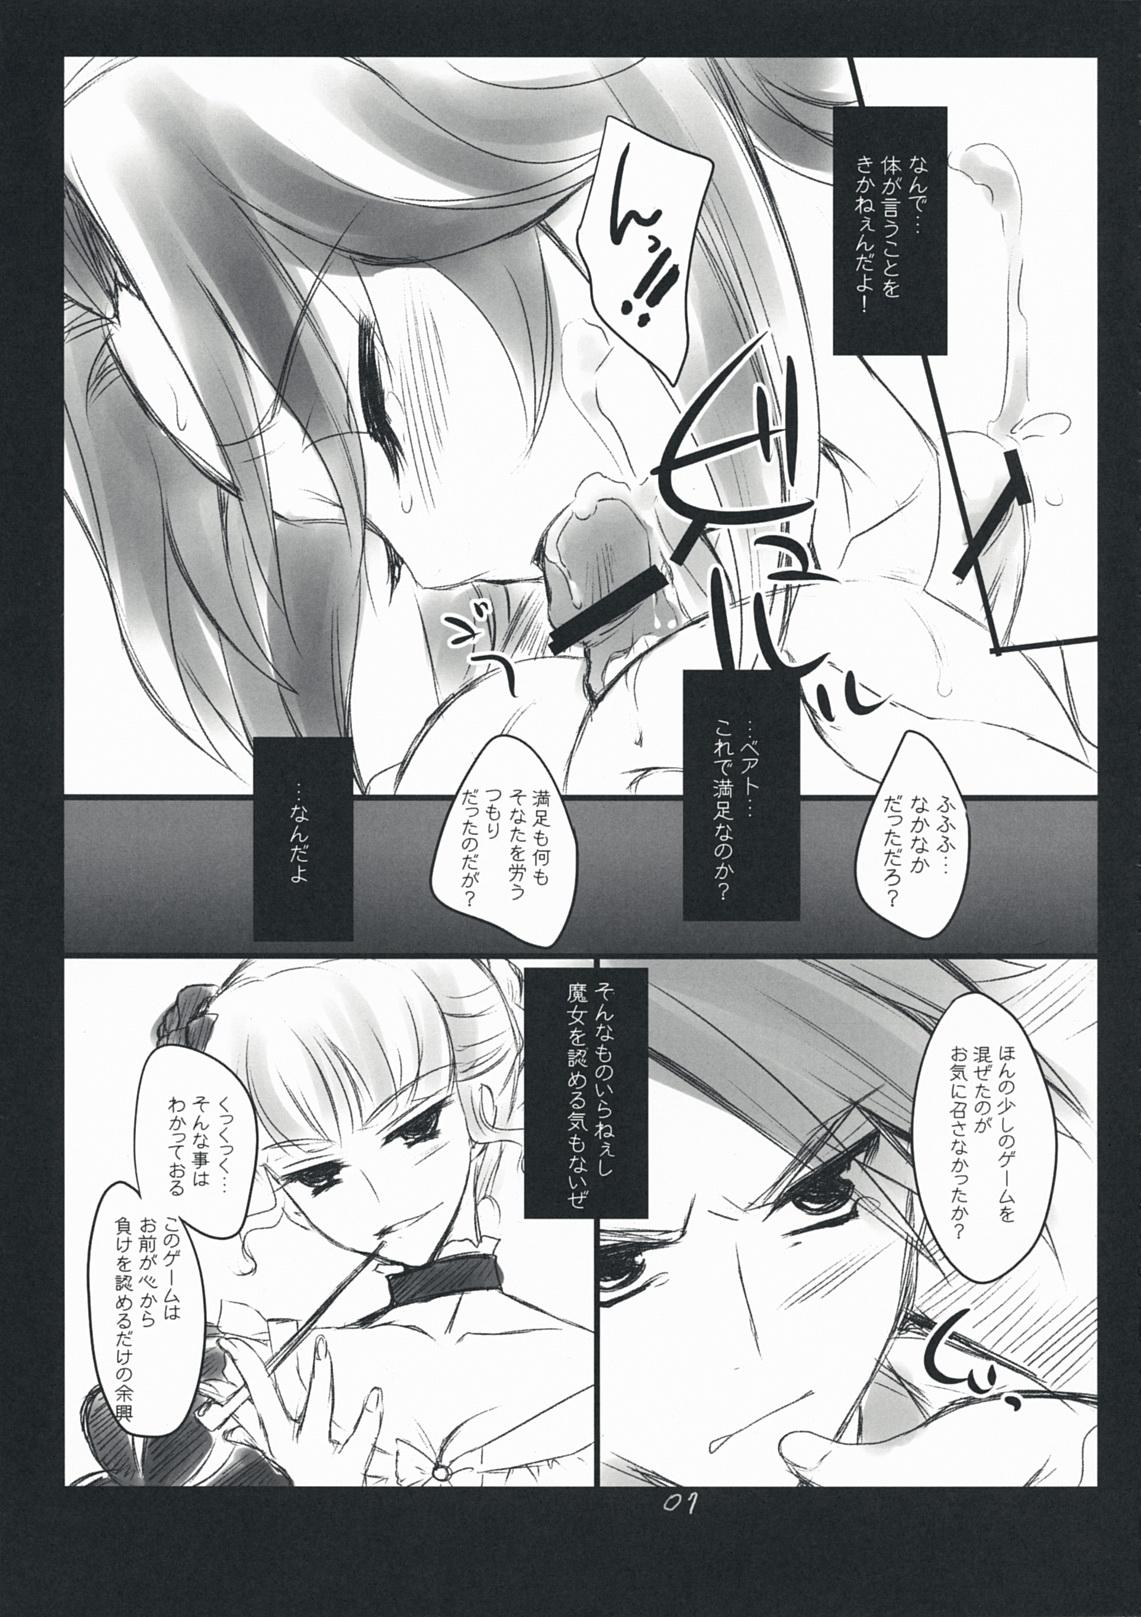 Leche The Queen Of Nightmare - Umineko no naku koro ni Backshots - Page 7